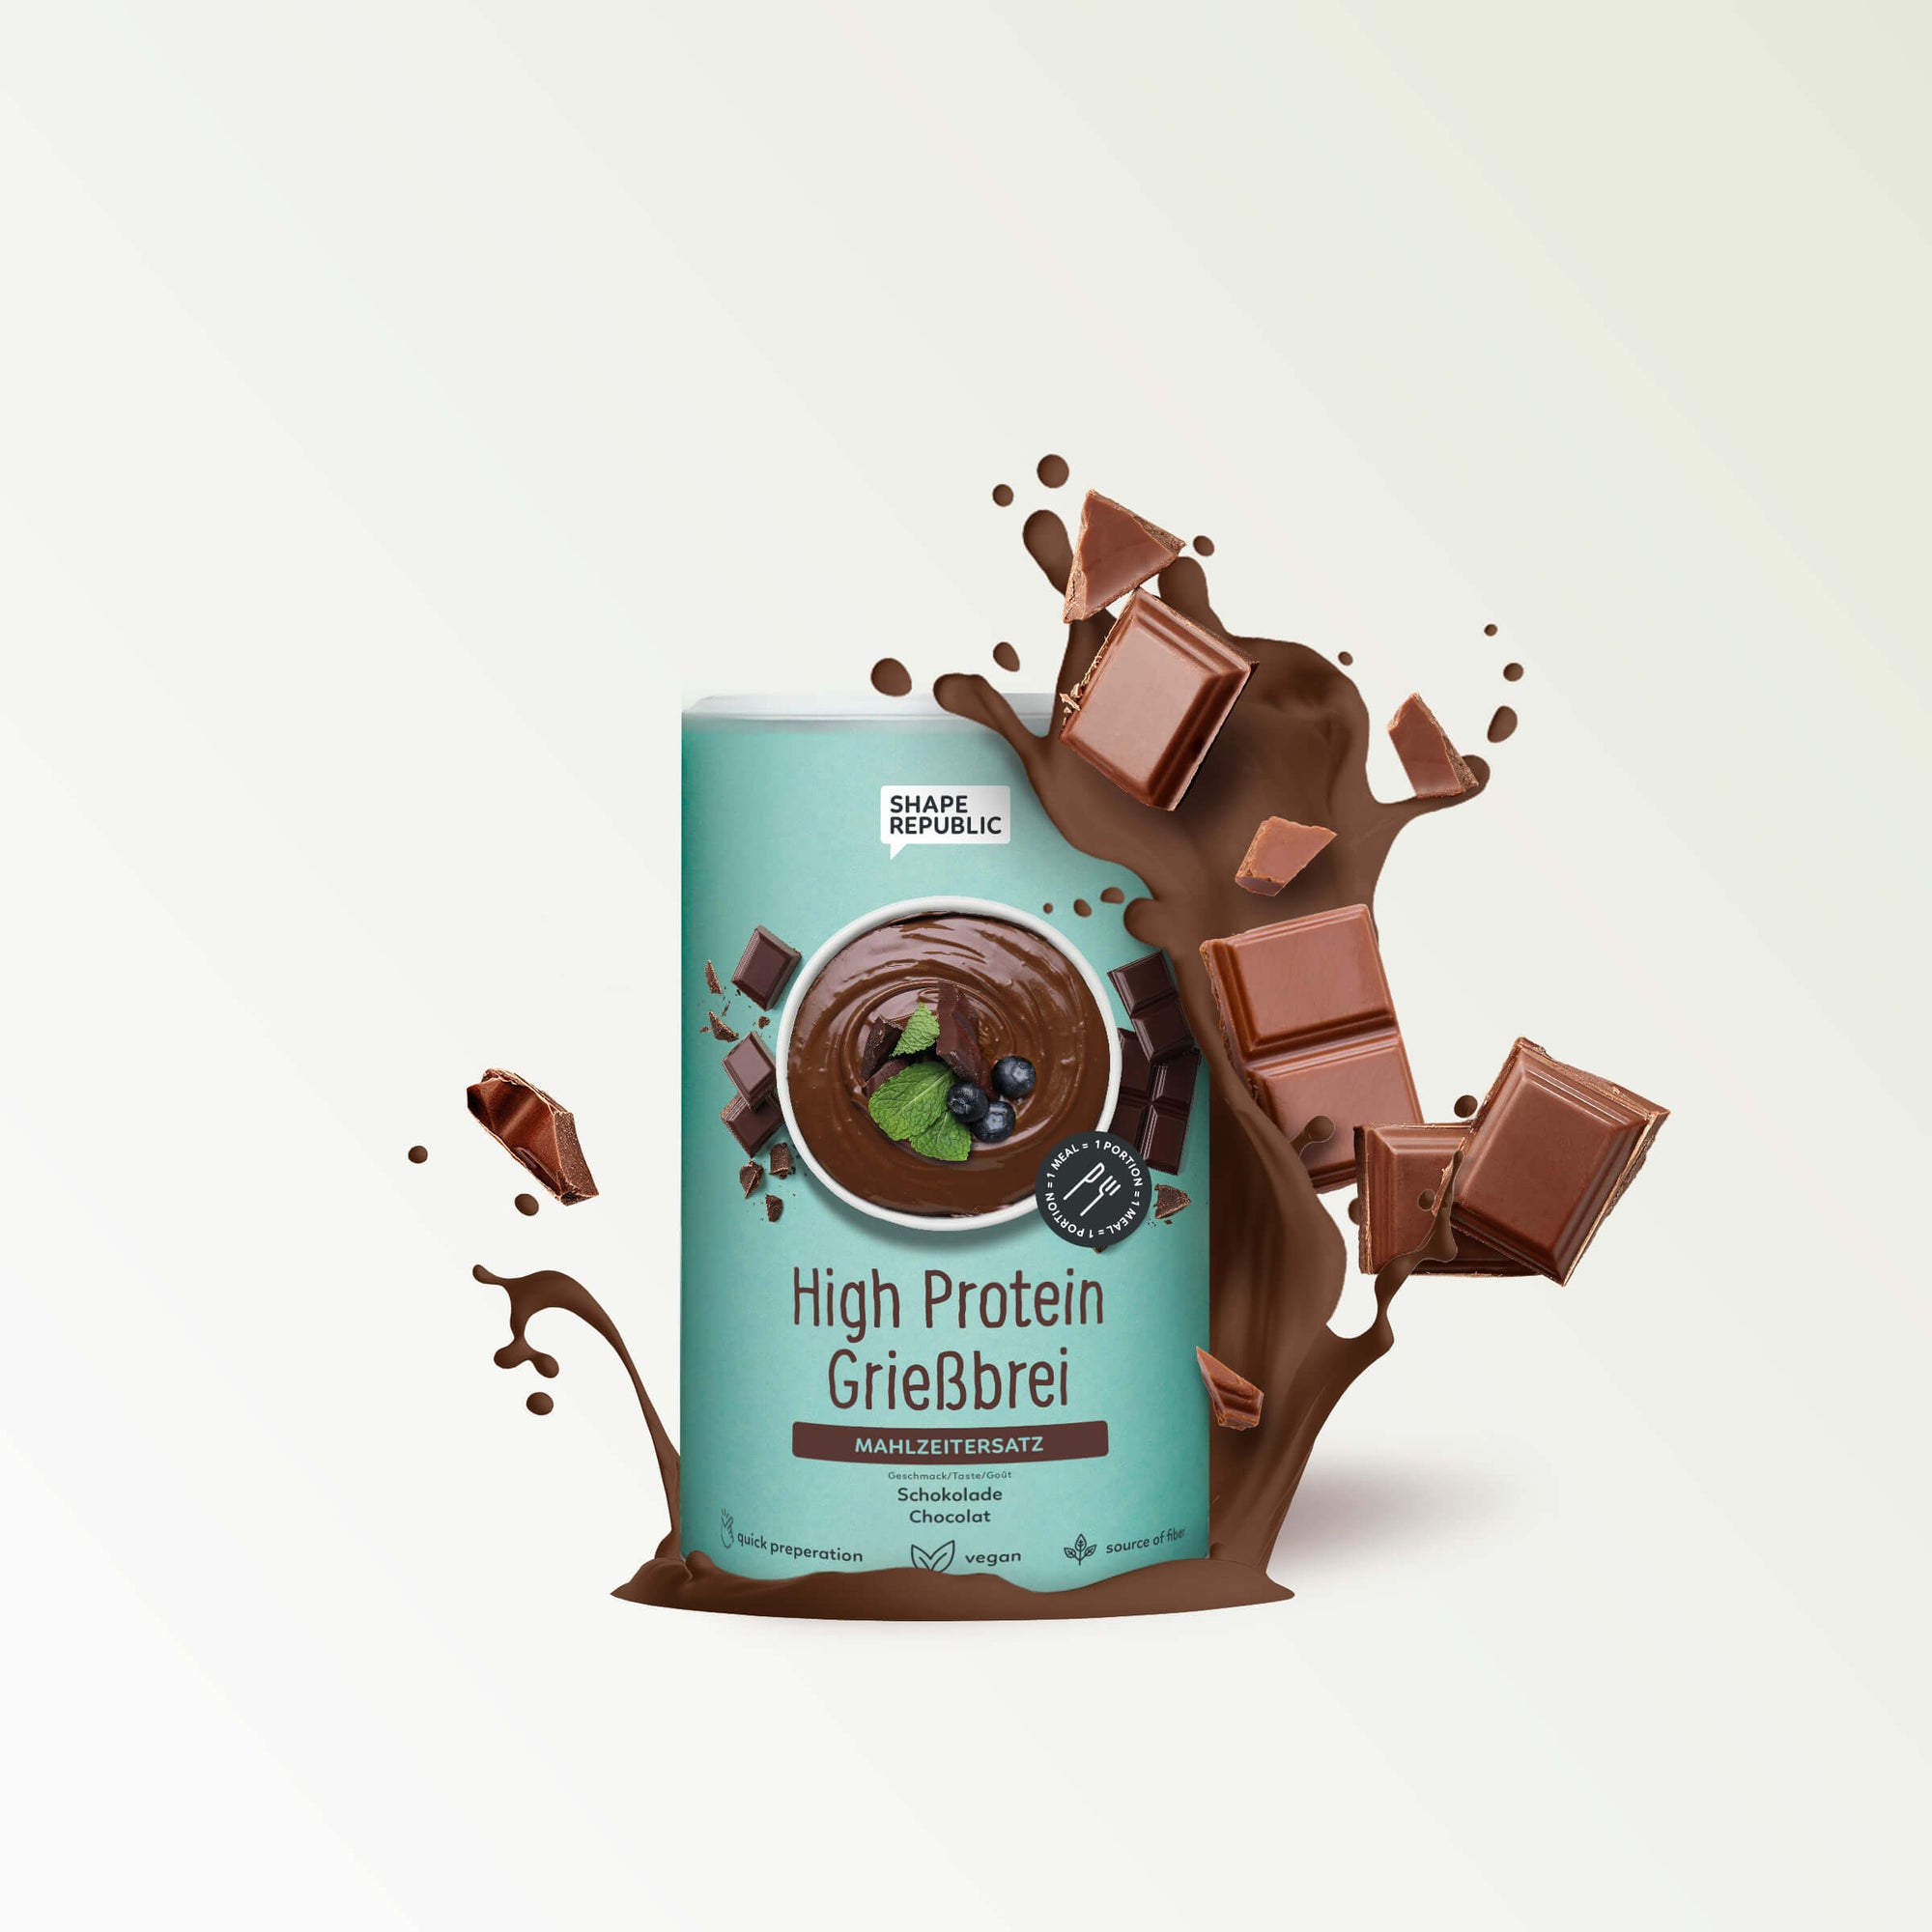 Vegan High Protein Grießbrei 560g | Schokolade | Shape Republic -D